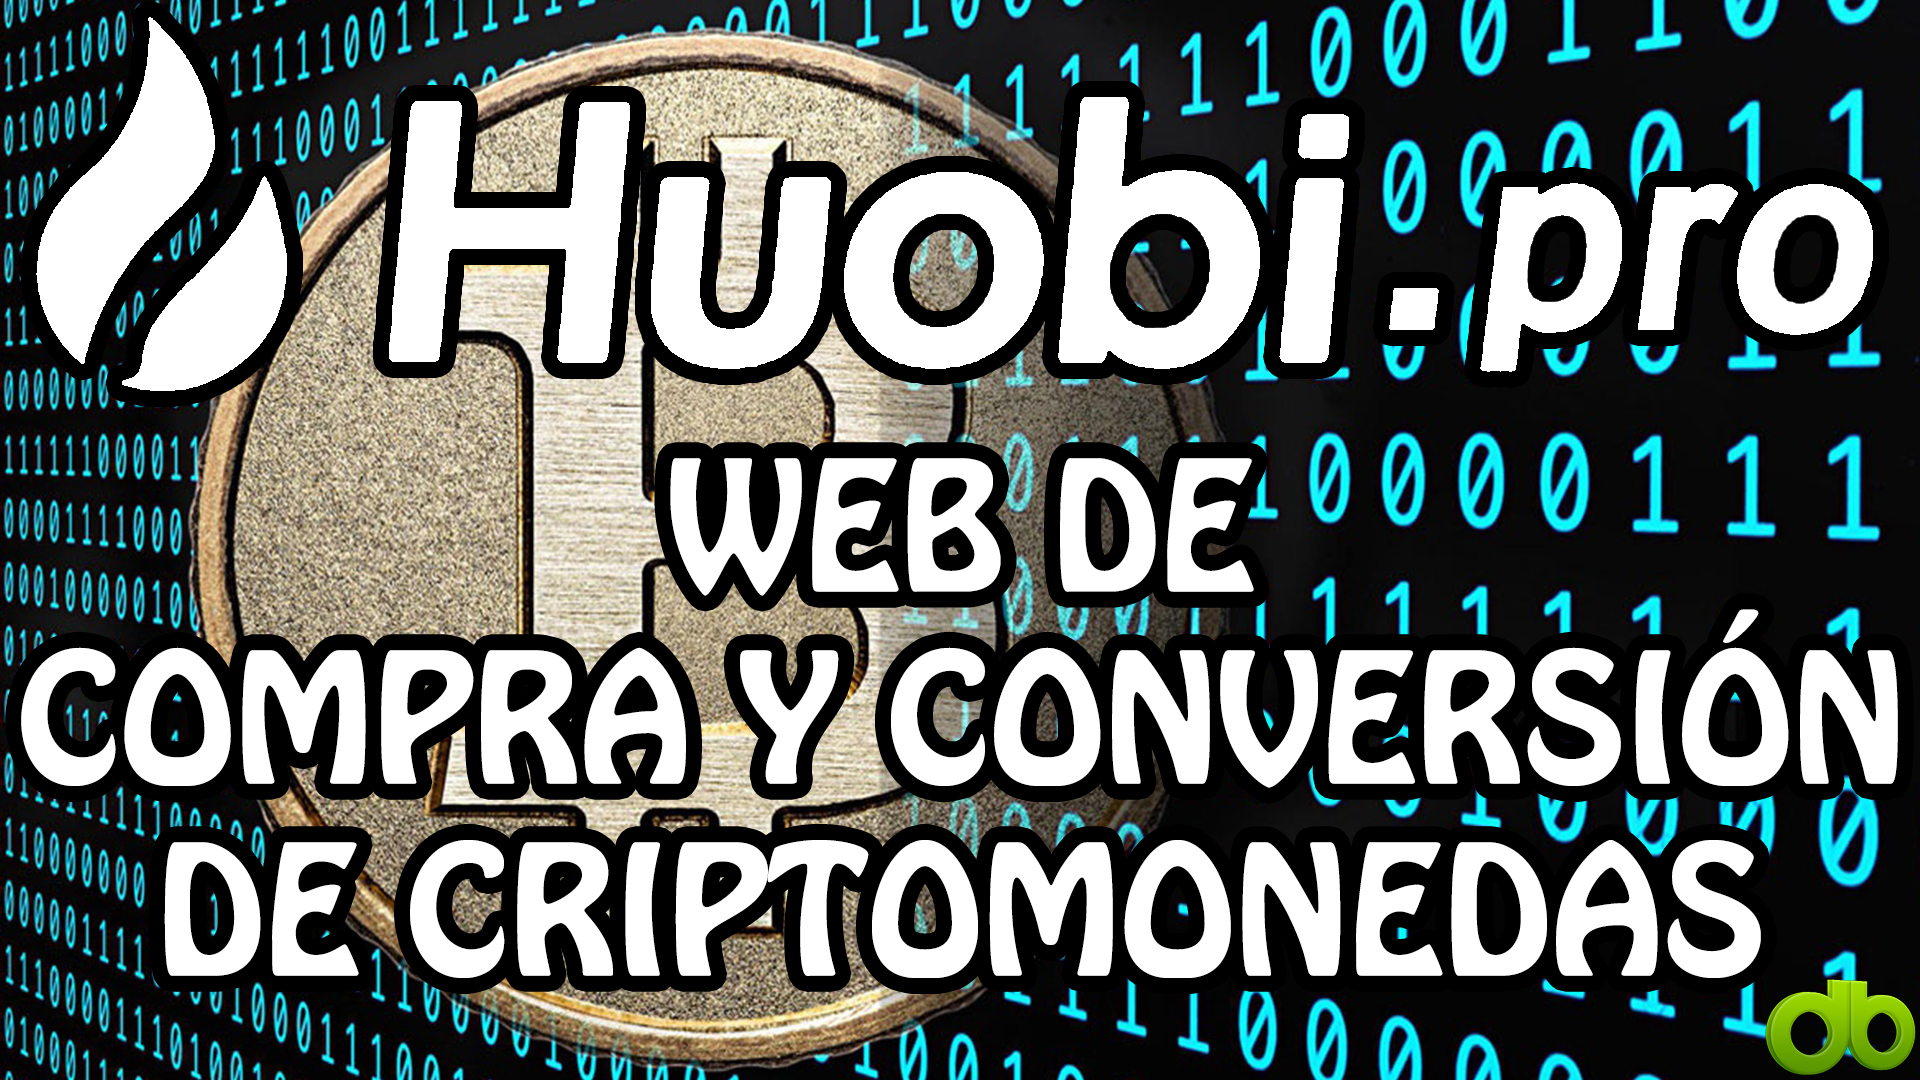 Huobi.Pro Web de compra y conversión de Criptomonedas ...